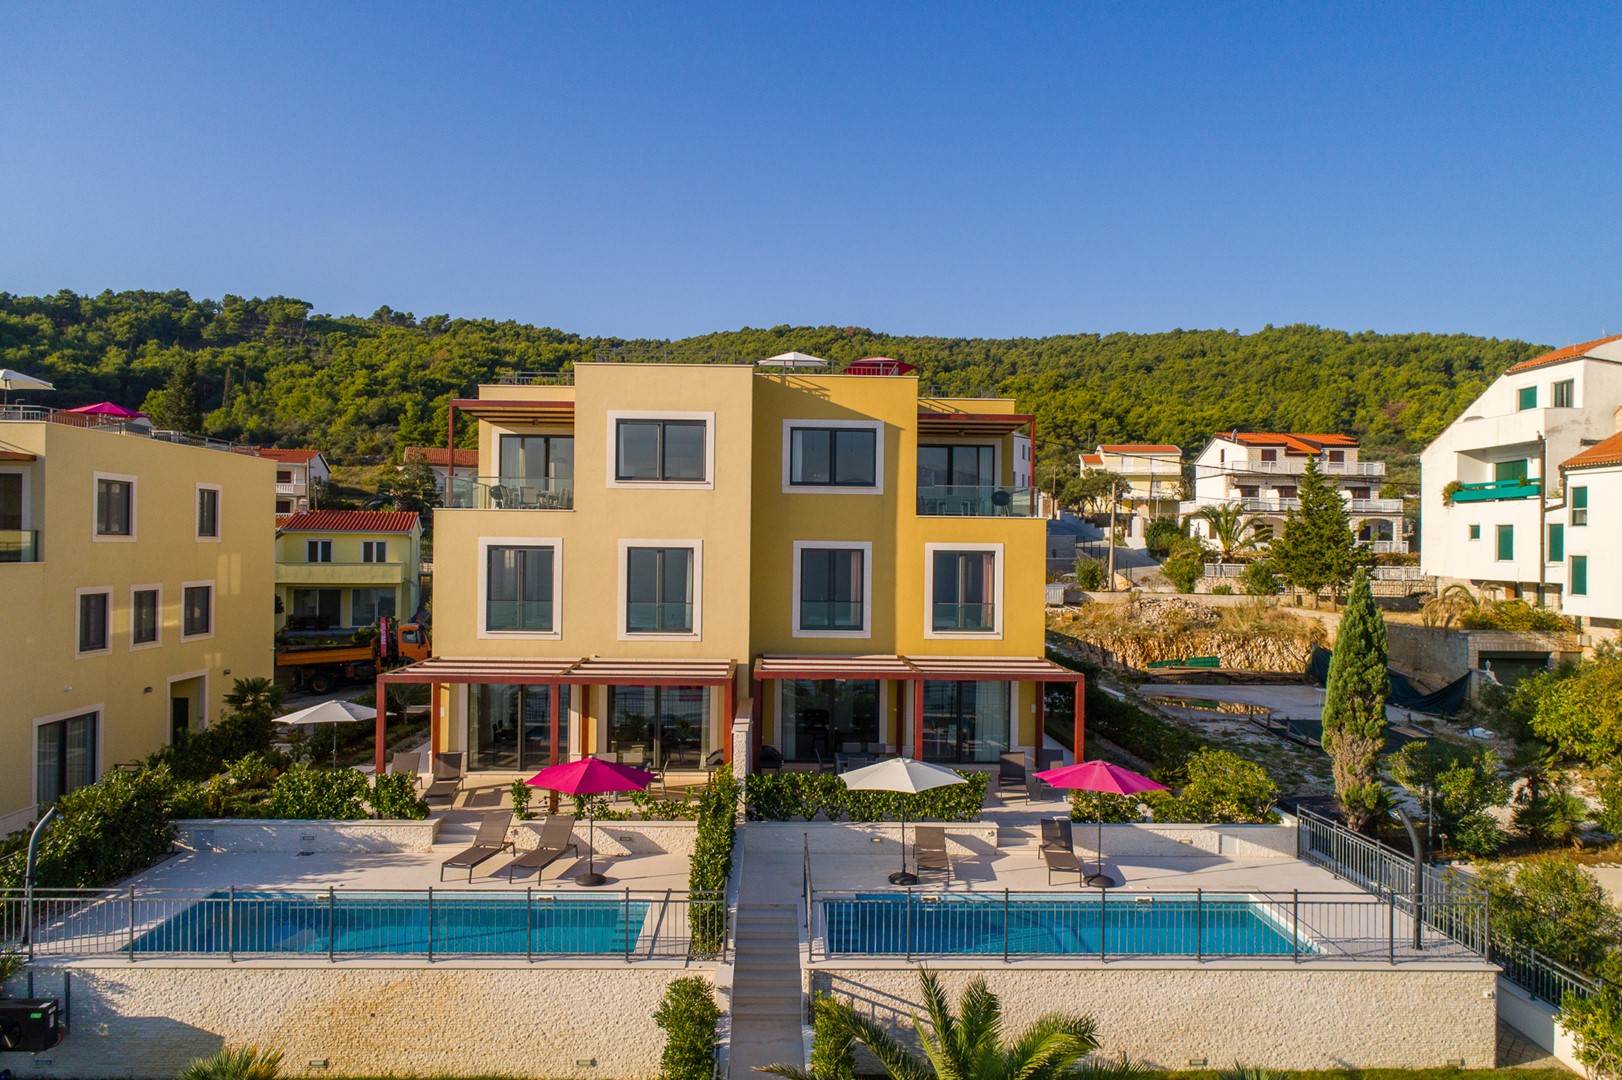 CIOVO LUXURY VILLAS - Luxury Villas Ciovo Joy 2 with heated pool at the beach